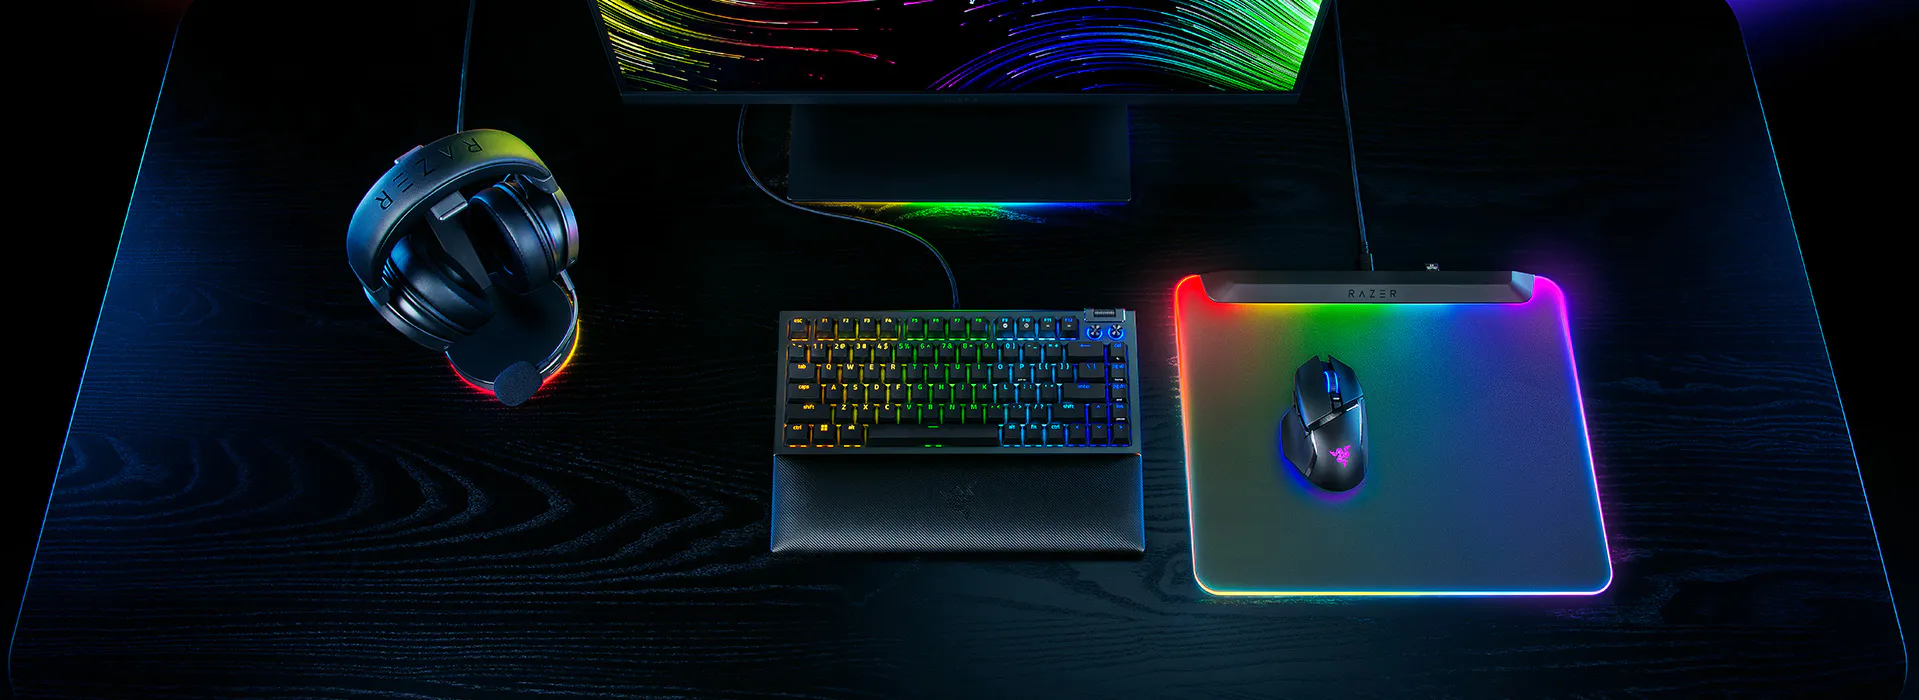 Razer выпускает новый коврик для мыши с RGB-подсветкой - Firefly V2 Pro